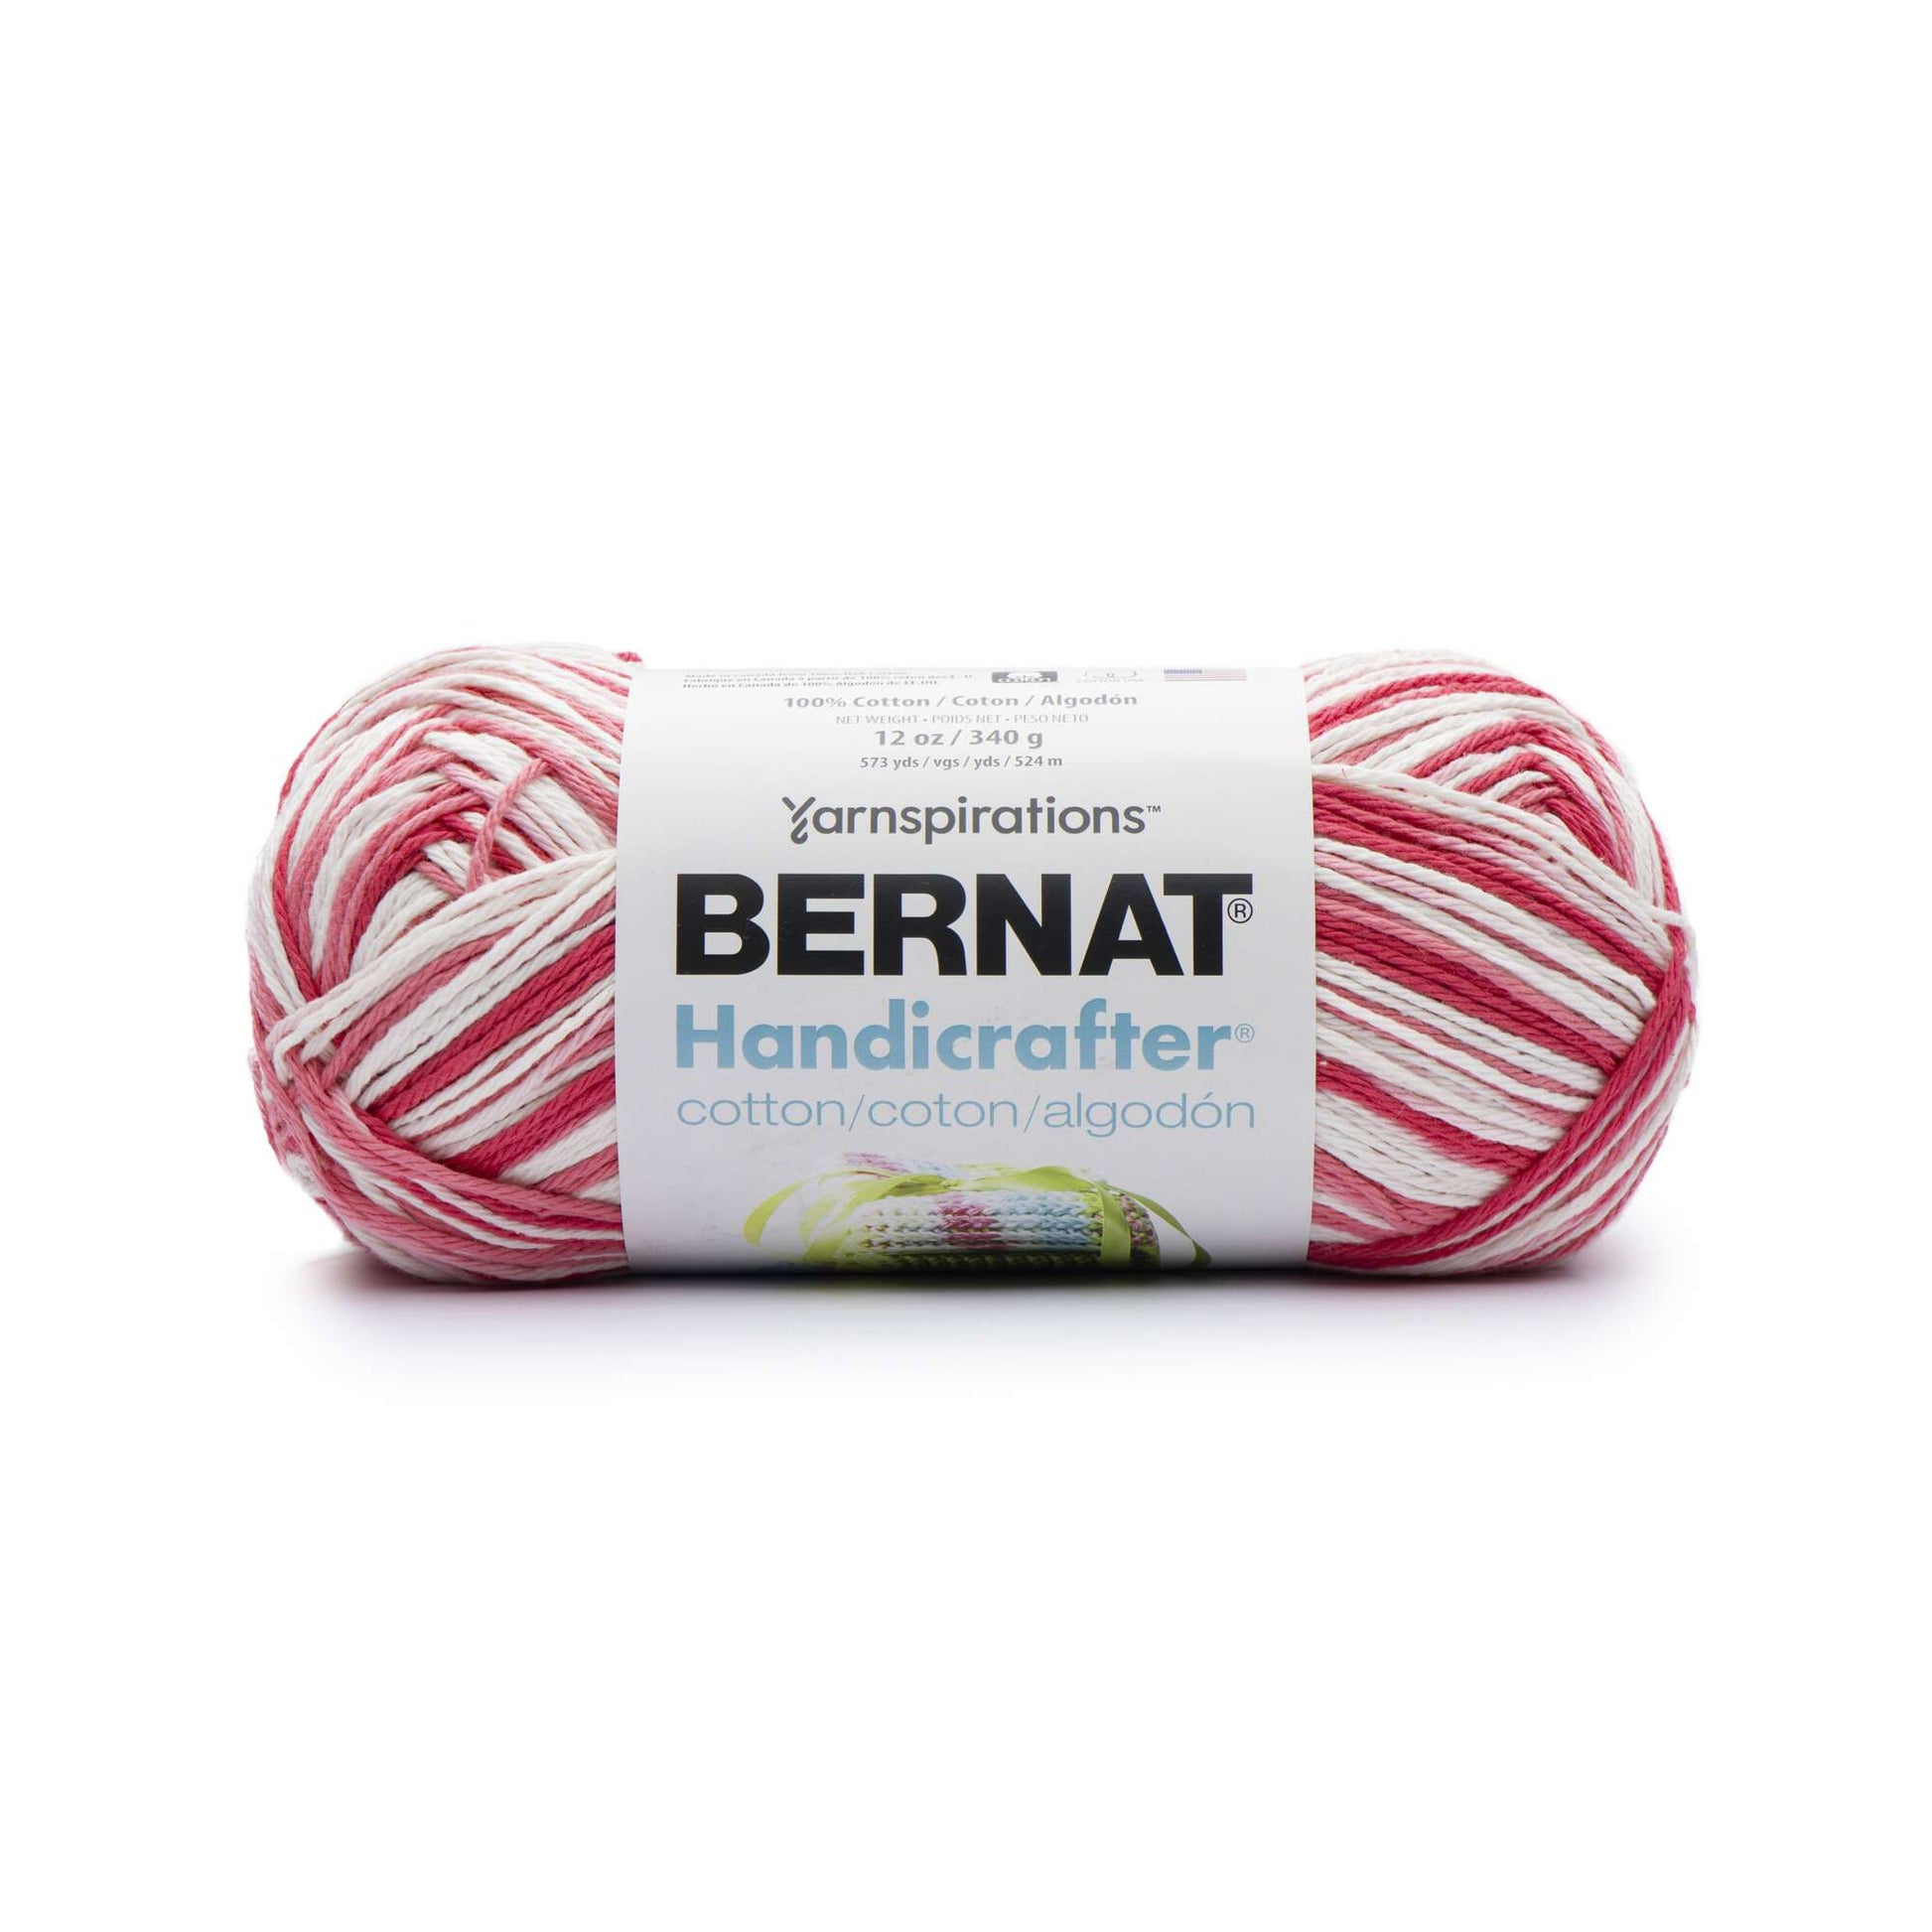 Bernat Handicrafter Cotton Yarn 340g Ombres-Salt & Pepper Print  162034-34004 - GettyCrafts